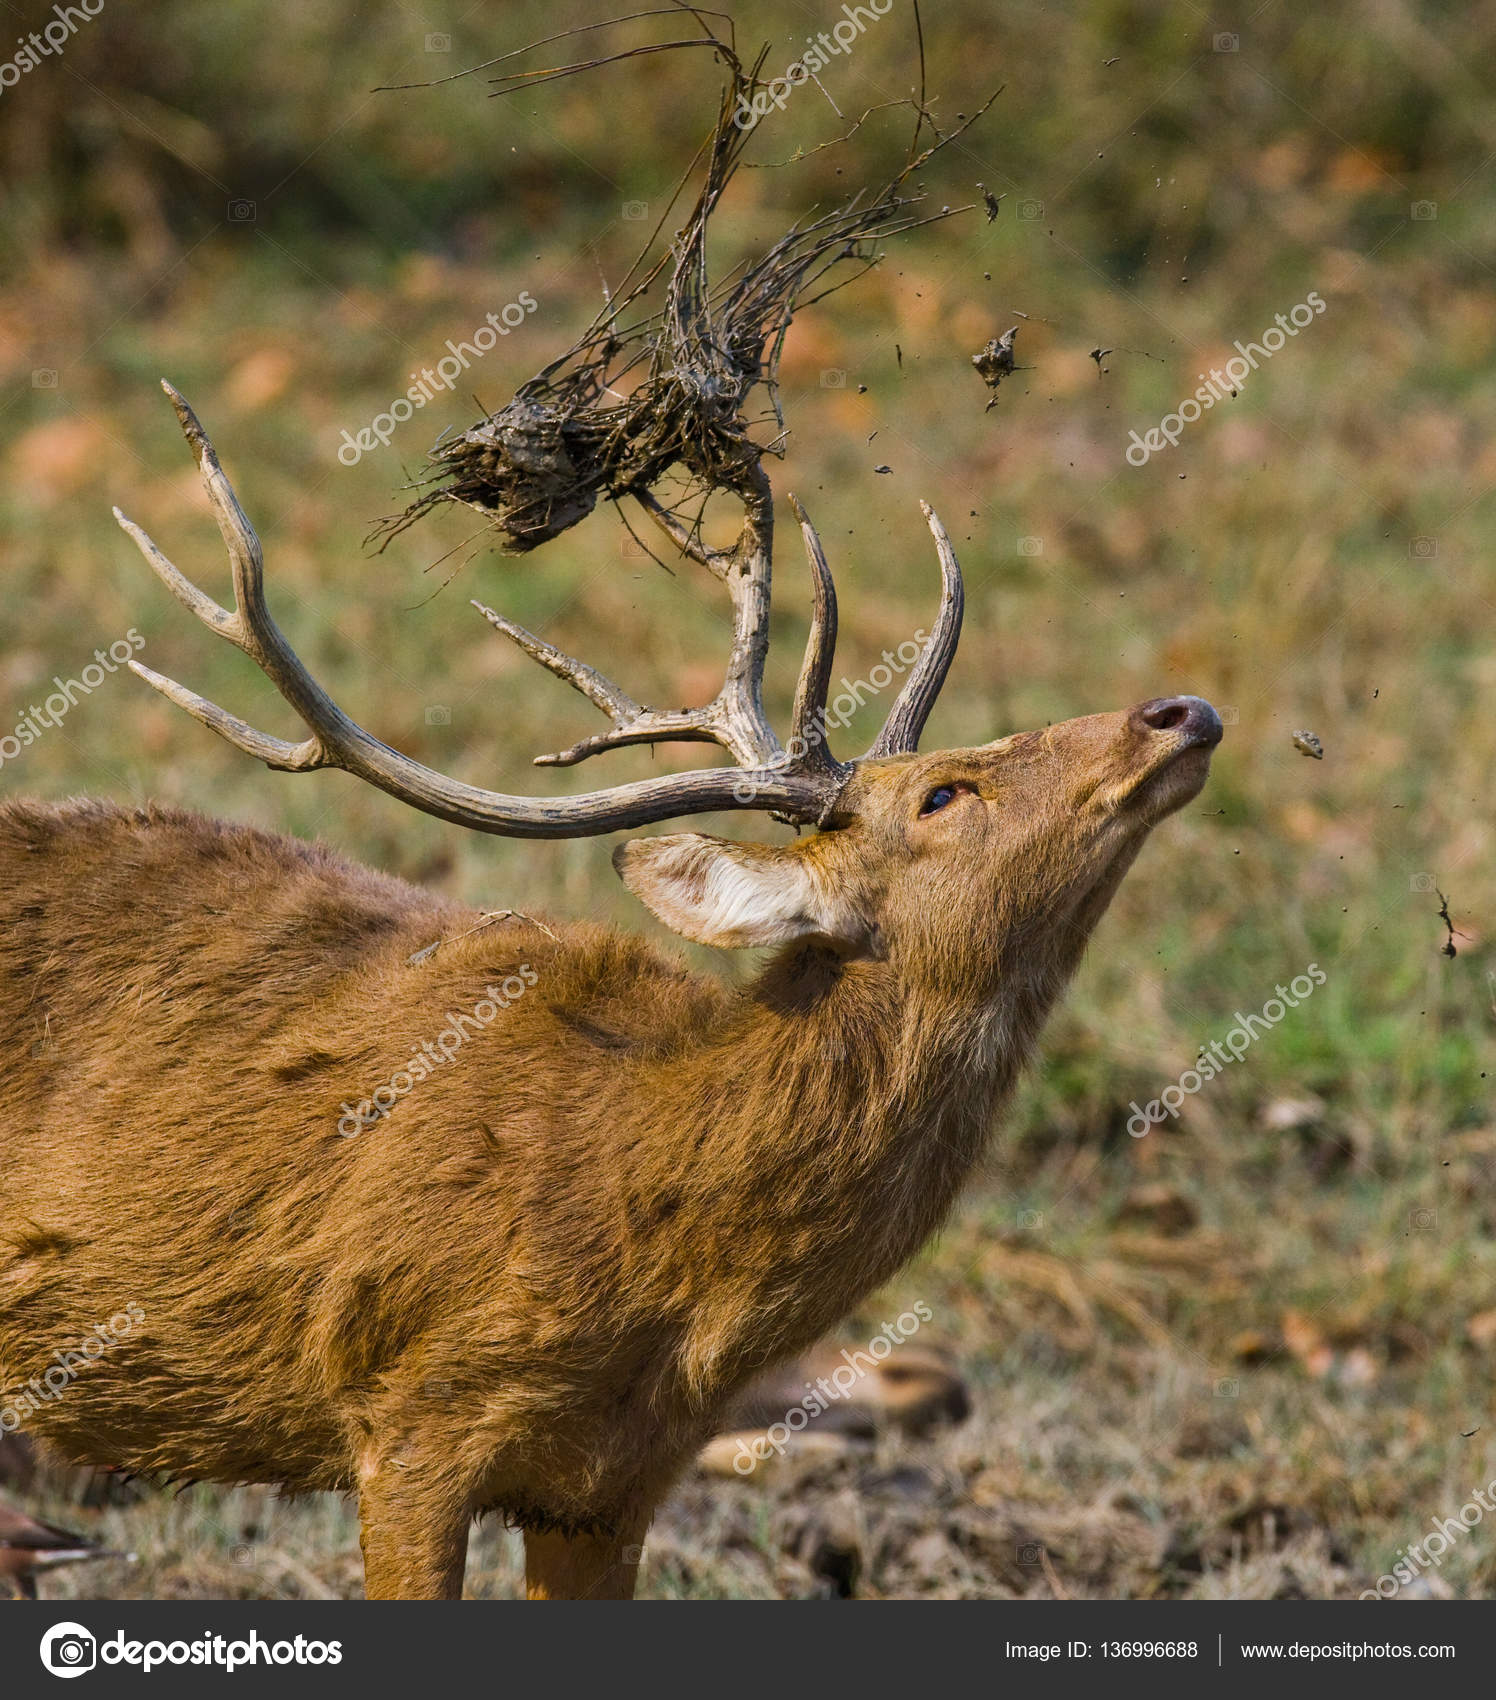 deer in jungle, in wild — Stock Photo © GUDKOVANDREY #136996688